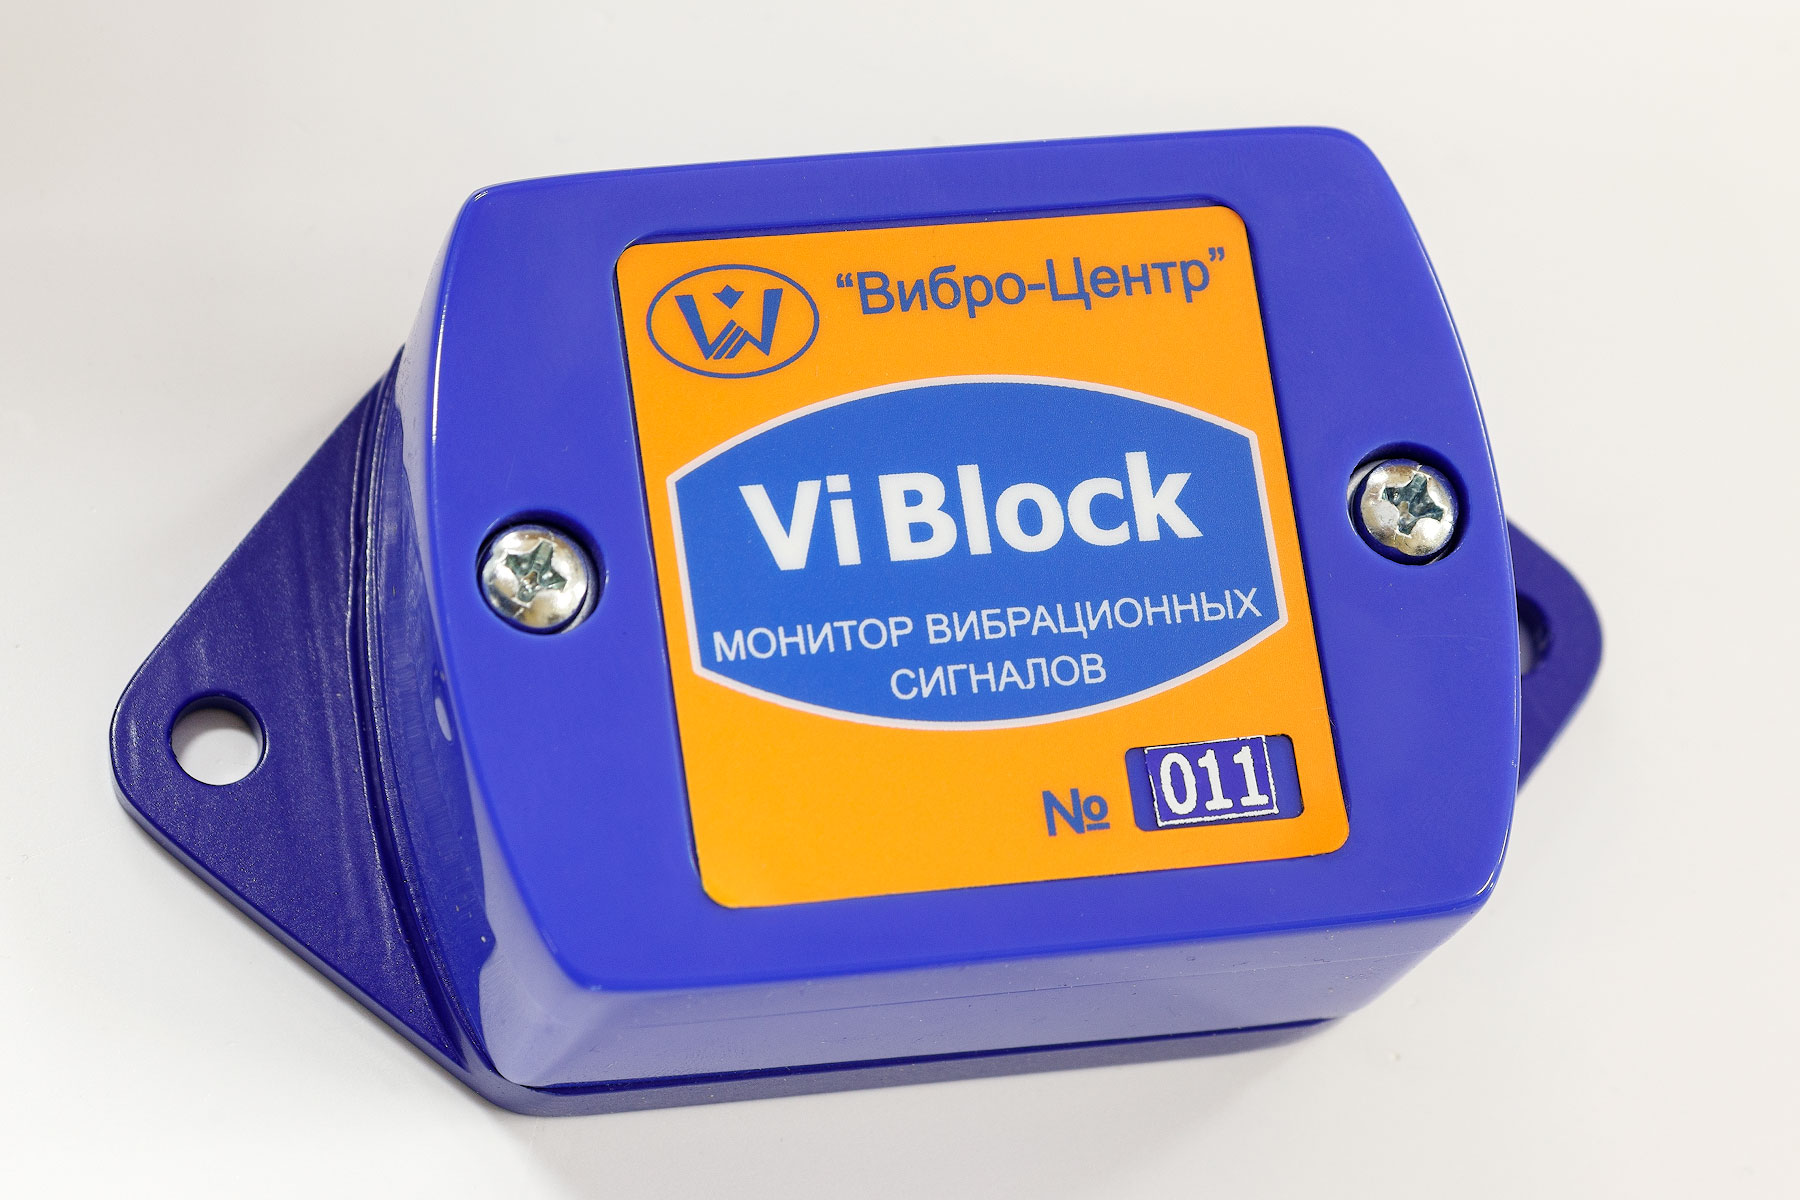 ViBlock